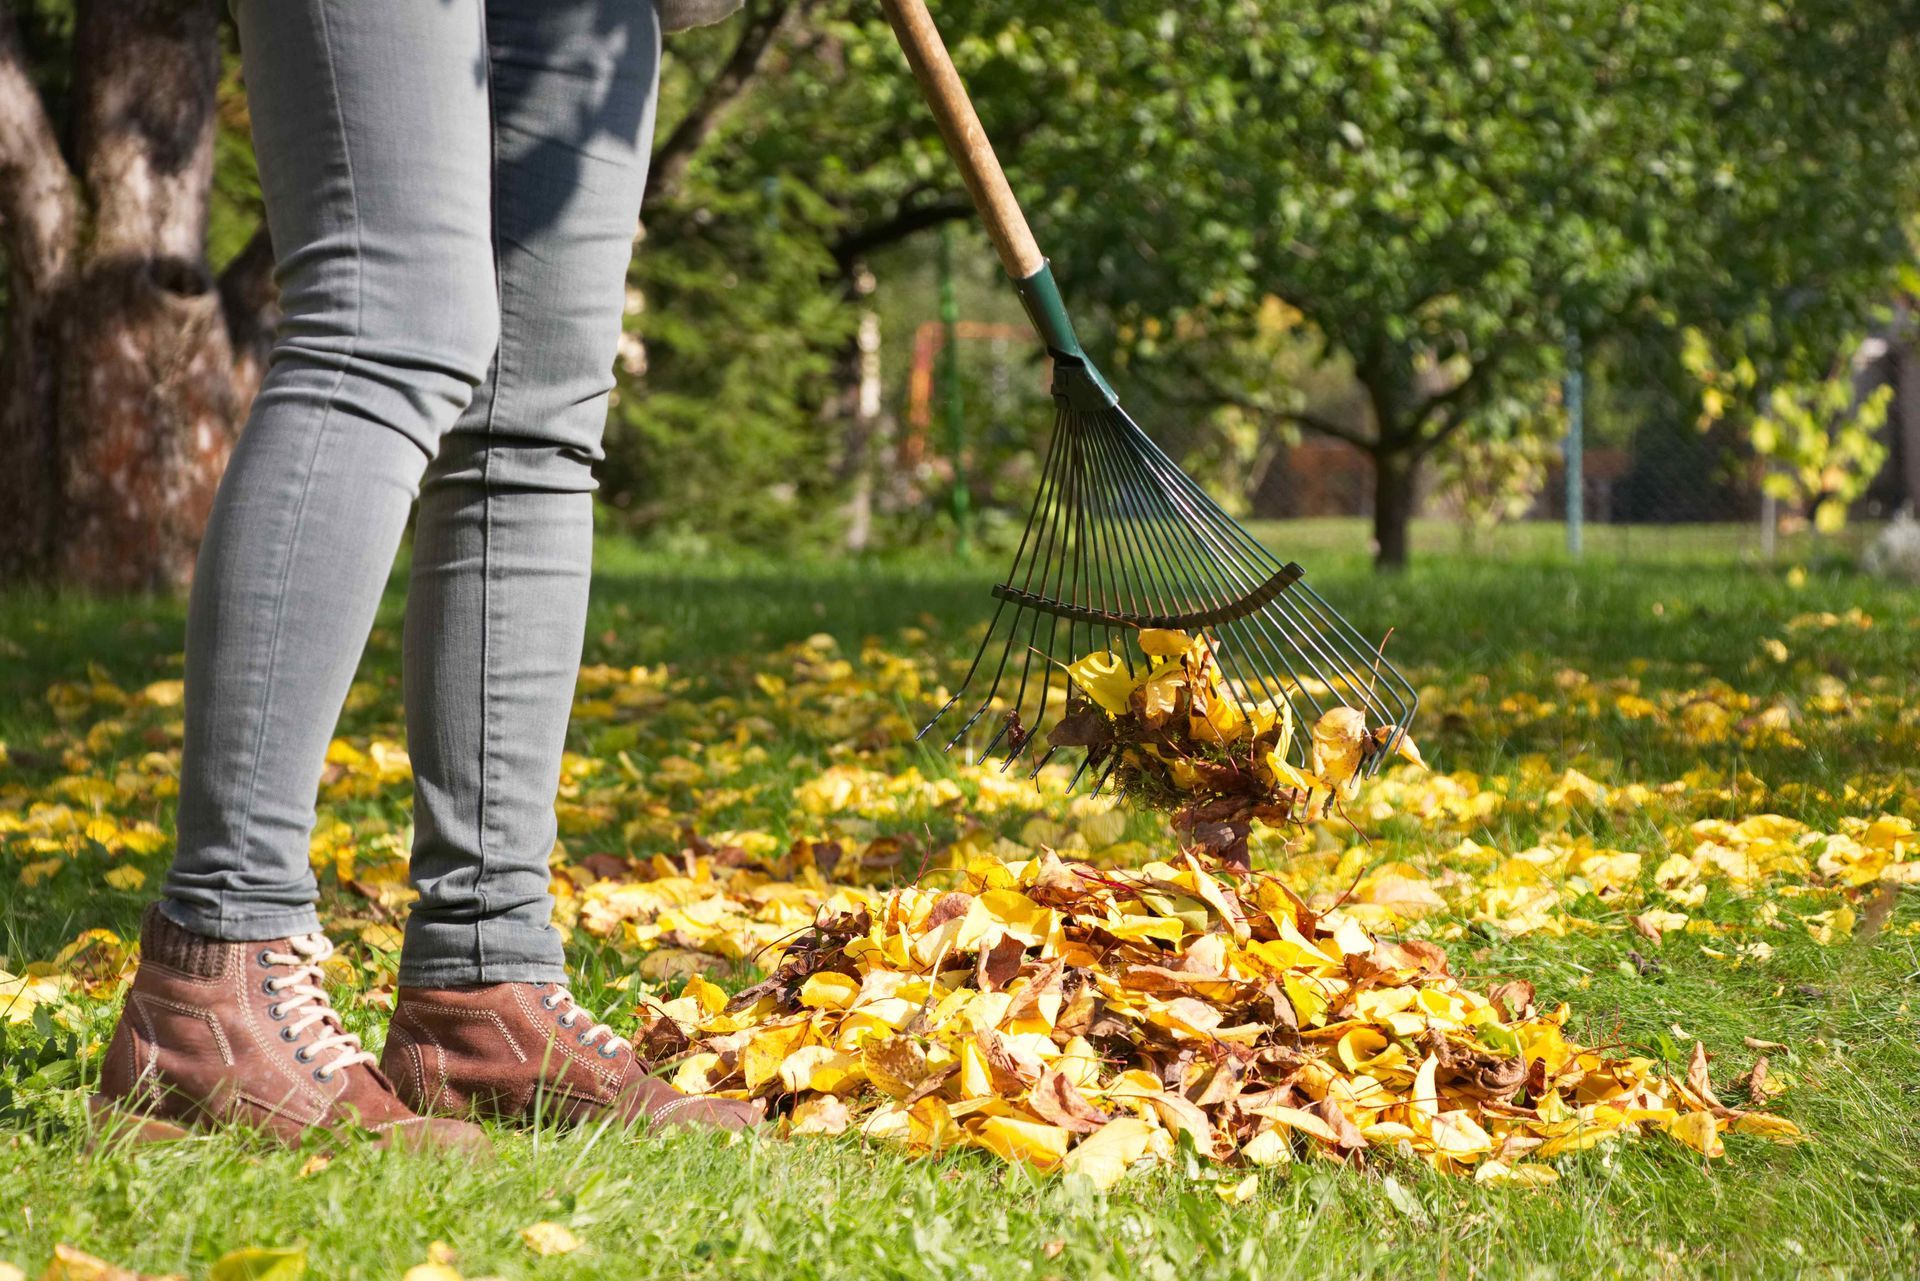 Leaves being raked